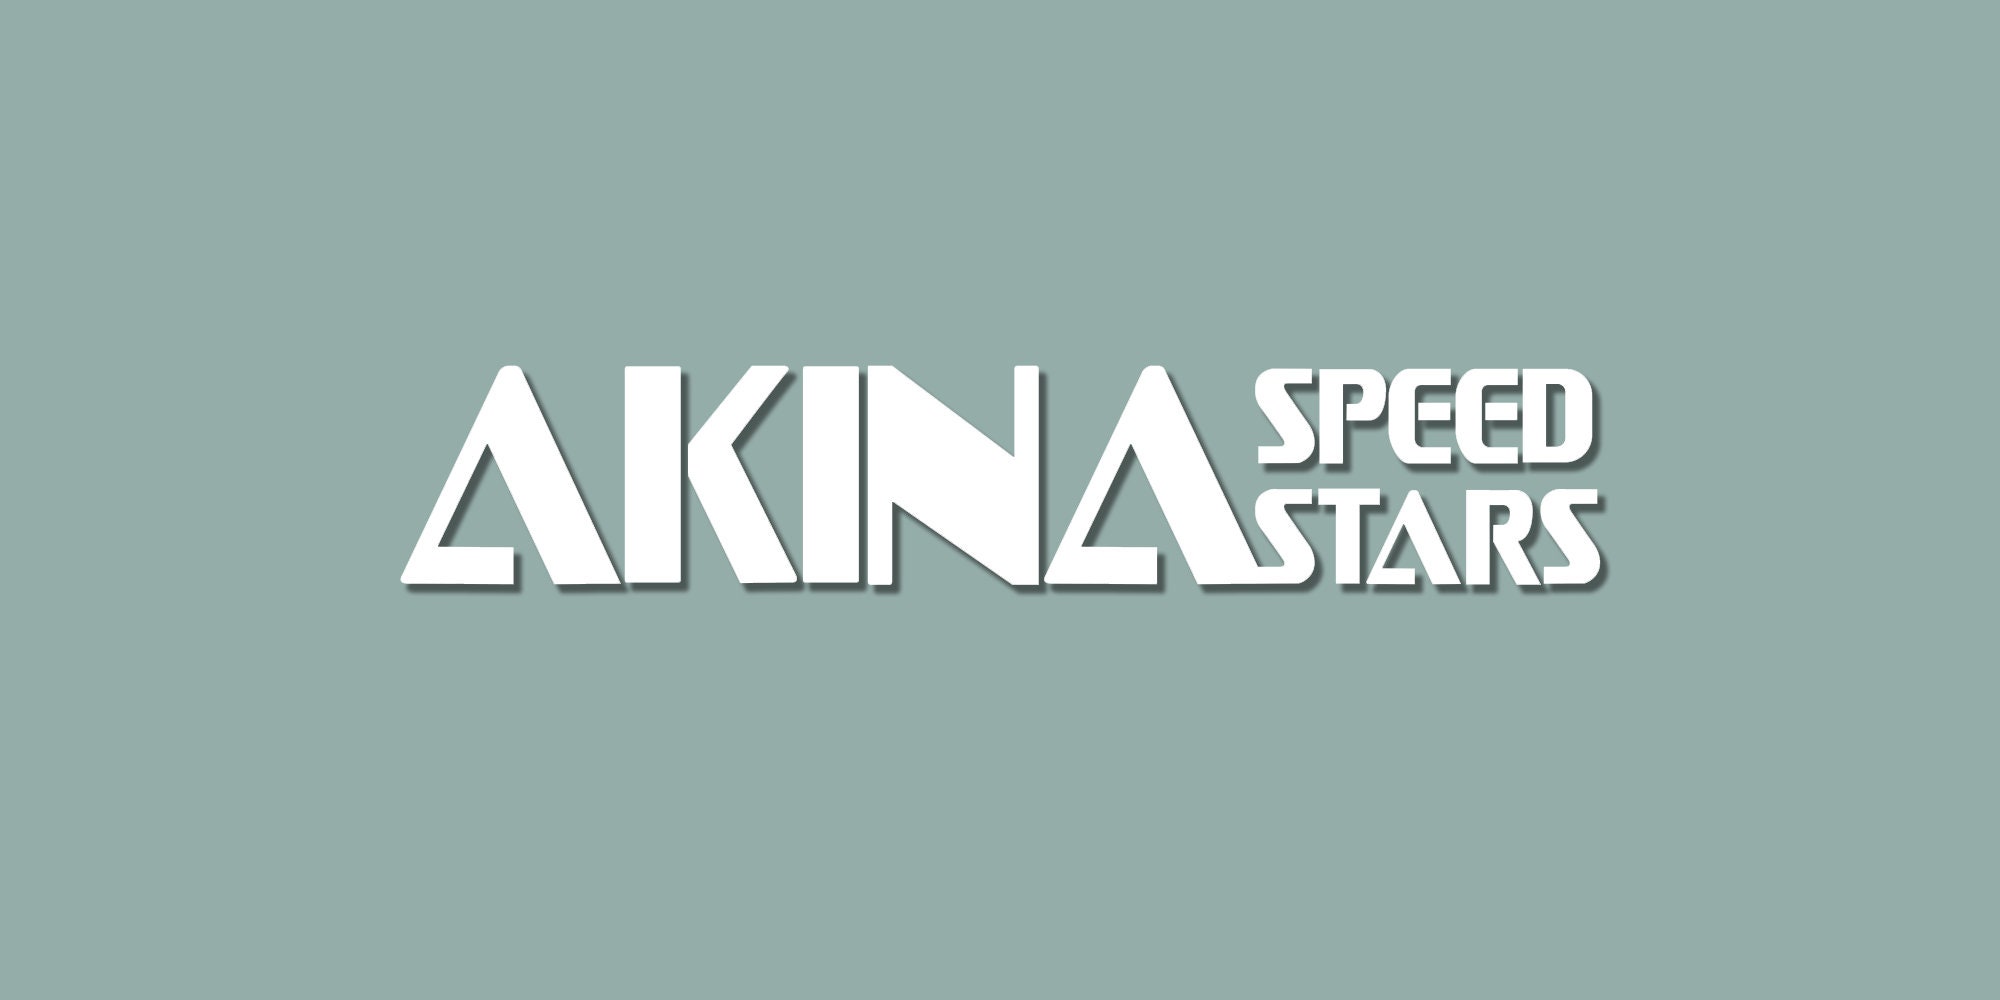 Akina Speed Stars (Initial-D) Sticker – Grafixpressions